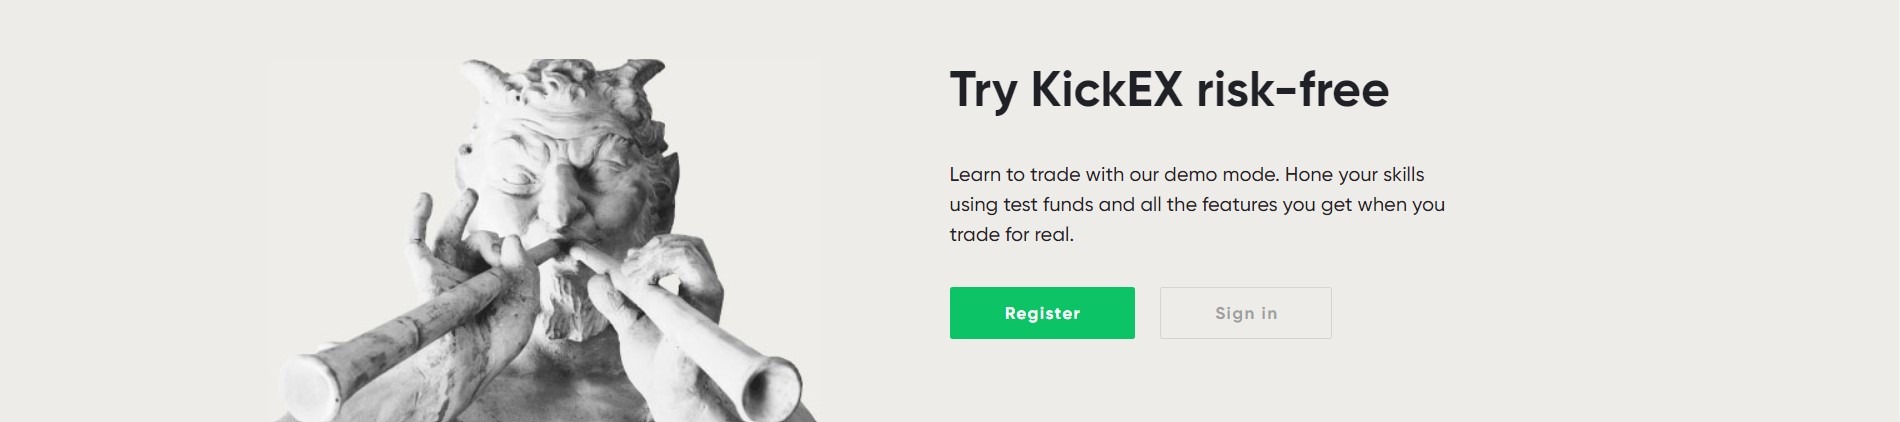 Kickex Pro bảo mật như thế nào?